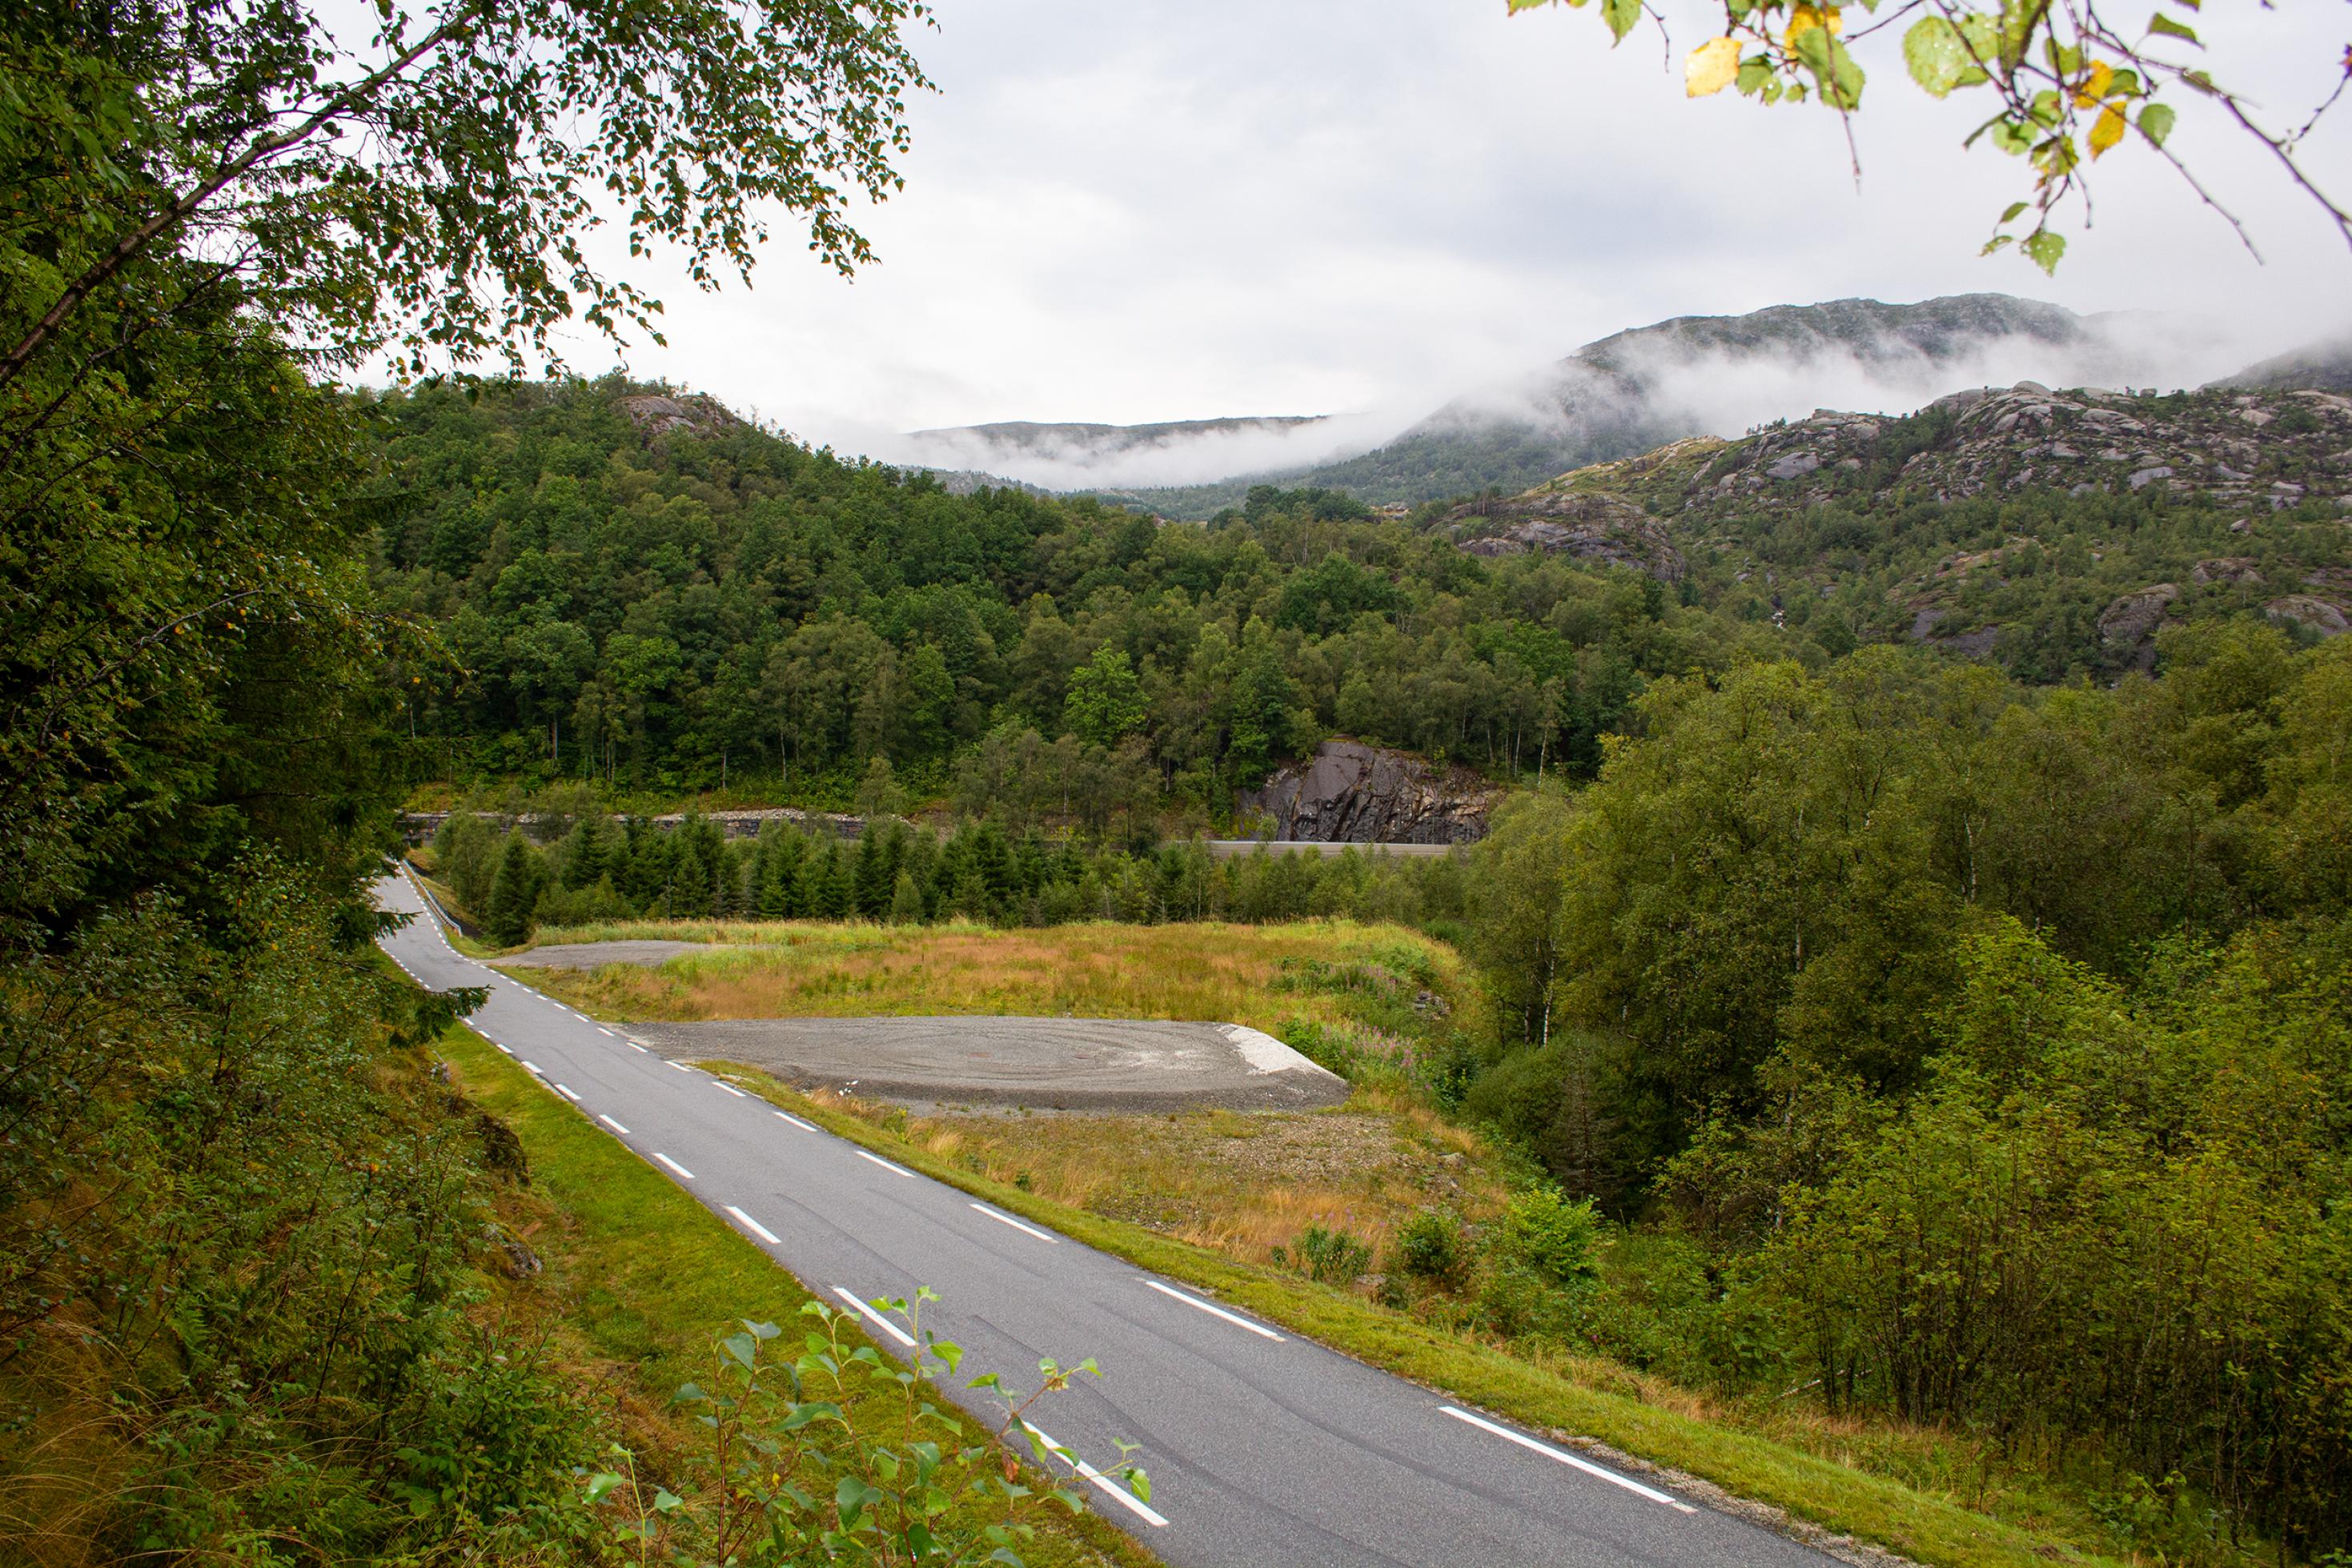 Schotterfläche am Straßenrand in bergiger Landschaft; aus dem Wald steigen Wolken auf